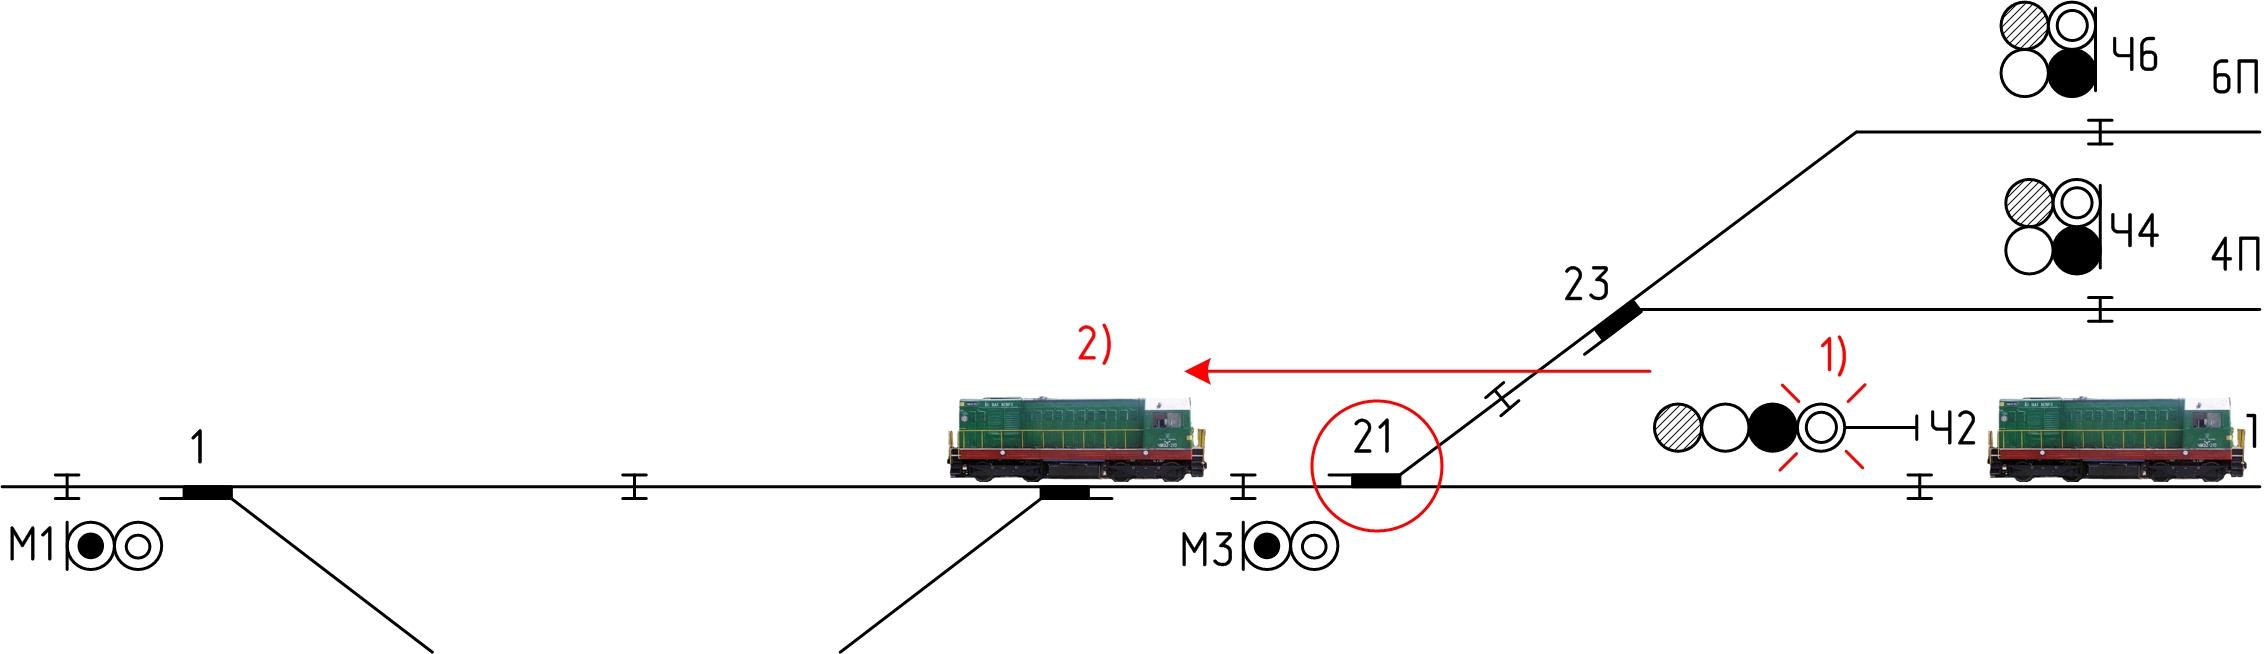 Следование поездов вагонами вперед. Негабаритный стык рельсовой цепи. Негабаритный изолирующий стык схема. Негабаритный изостык на железной дороге схема. Негабаритный изолирующий стык РЖД.